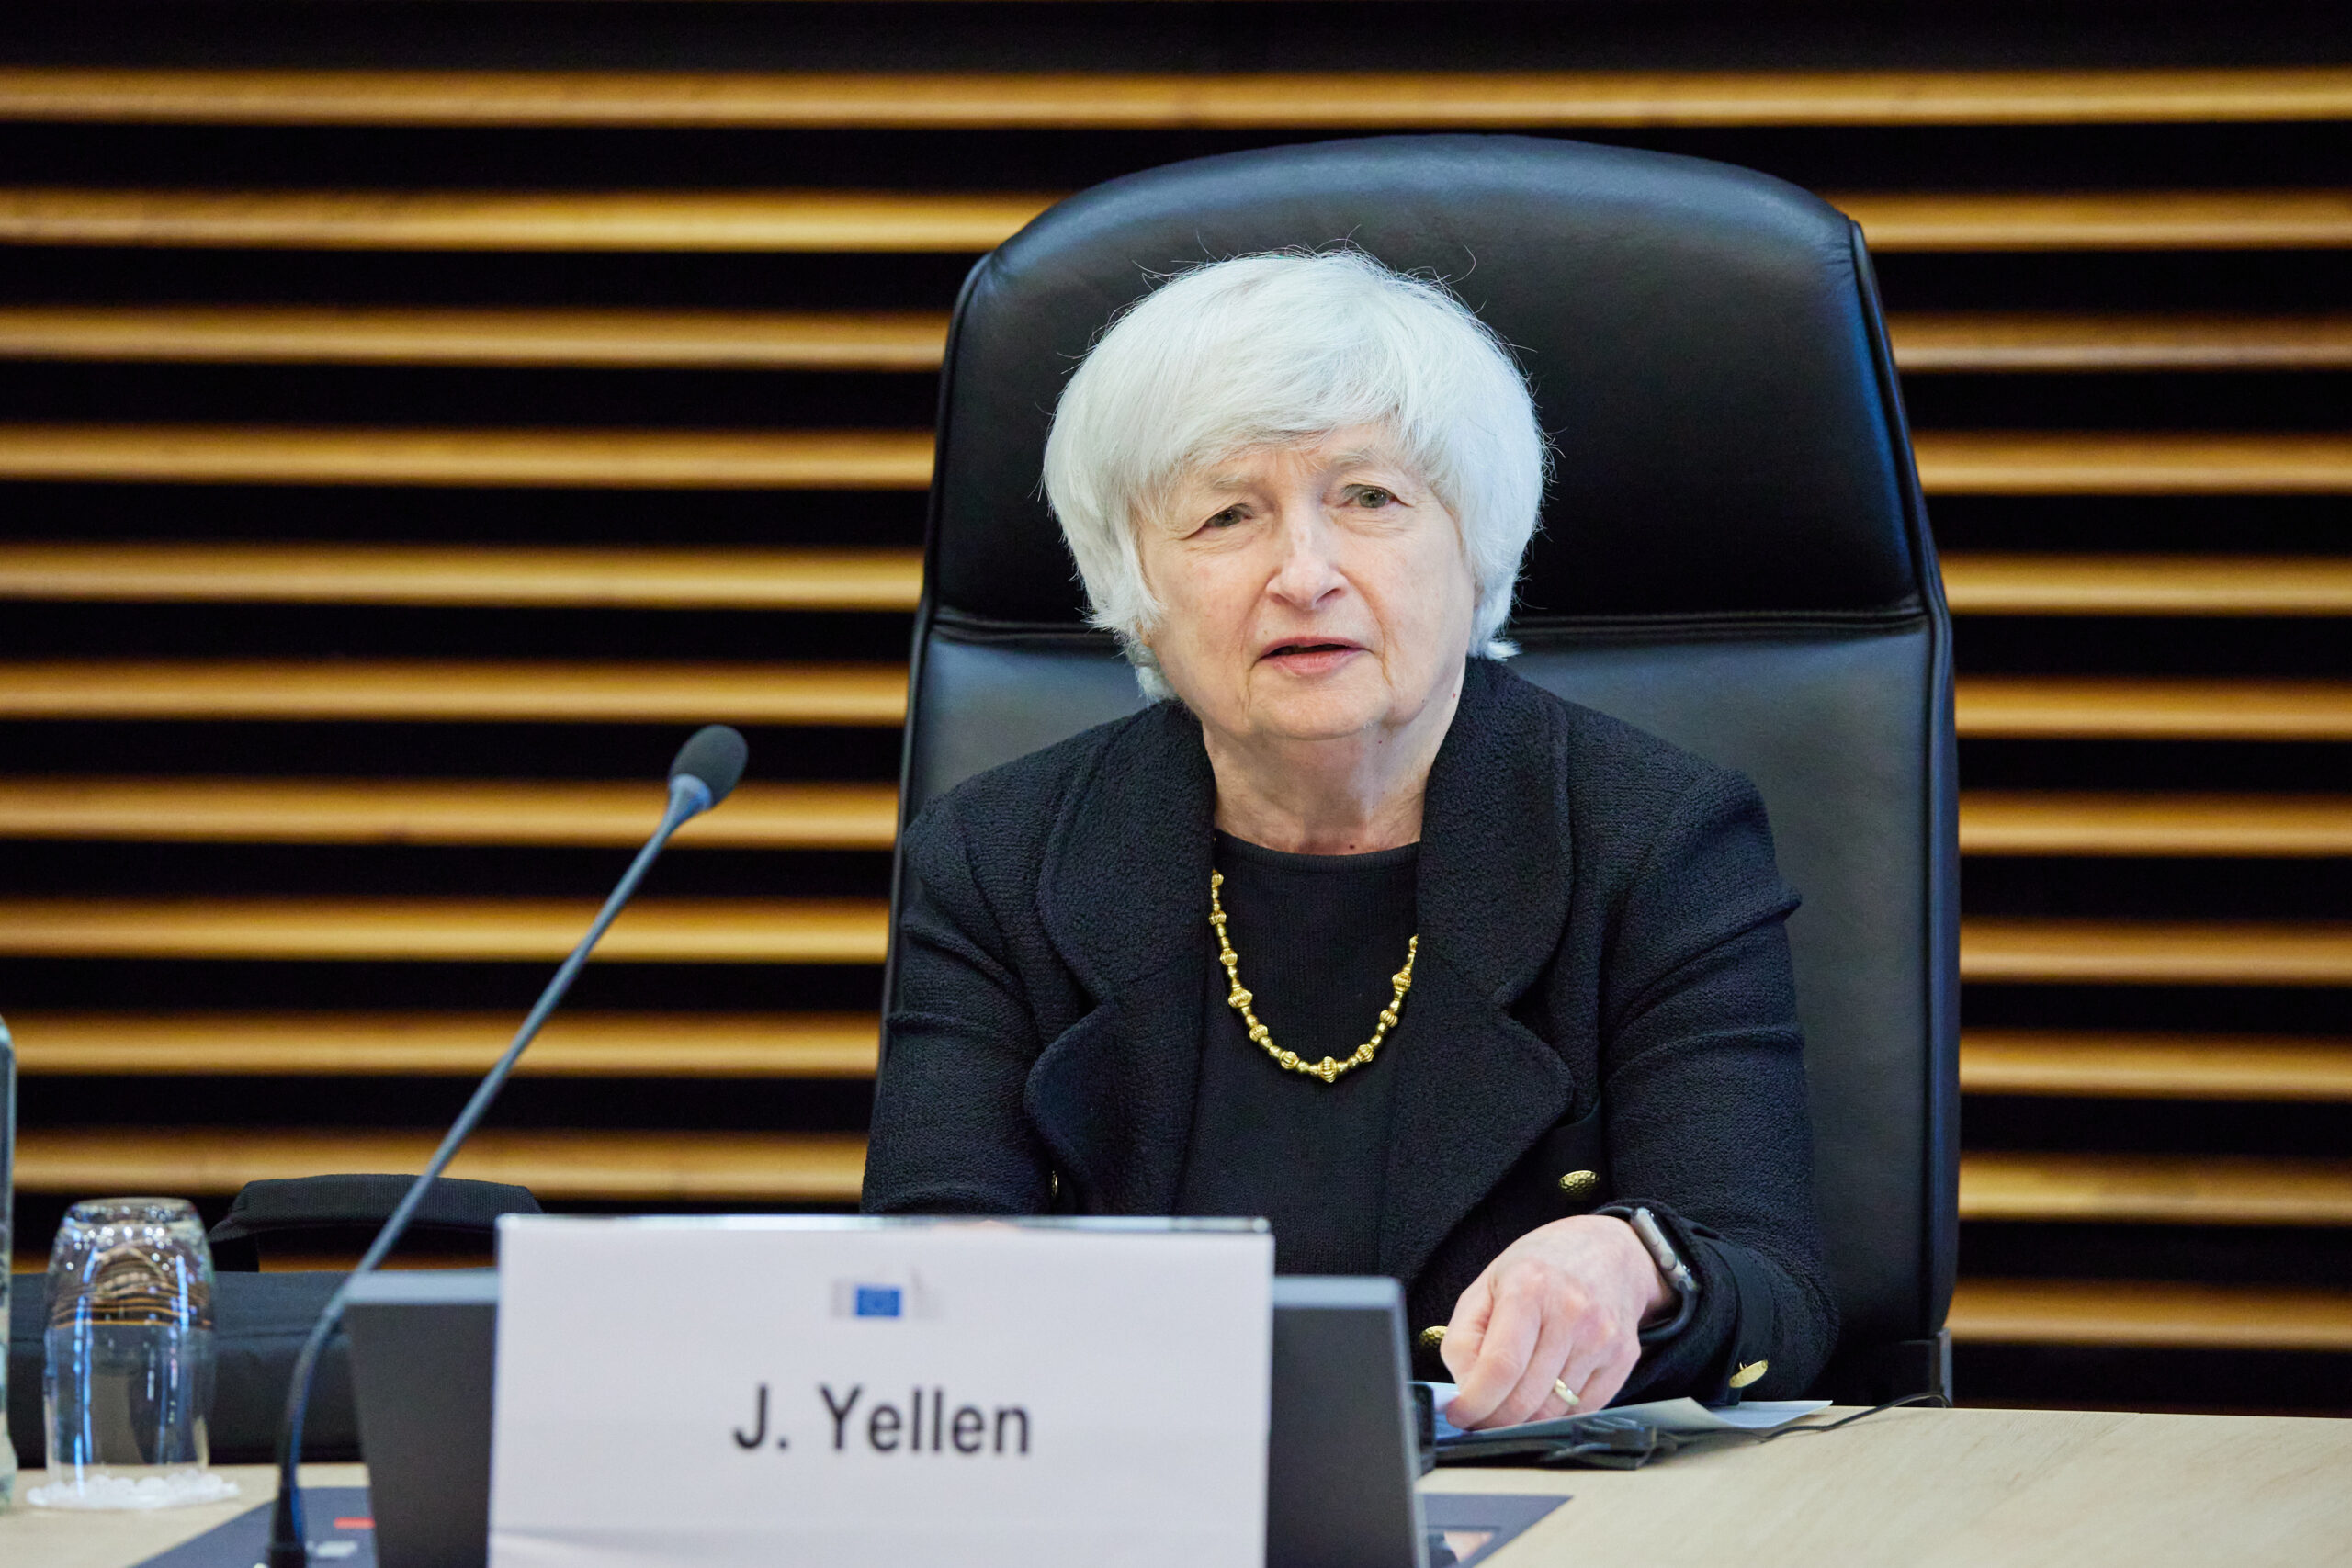 Yellen in Cina: “risponderemo alle pratiche commerciali sleali”